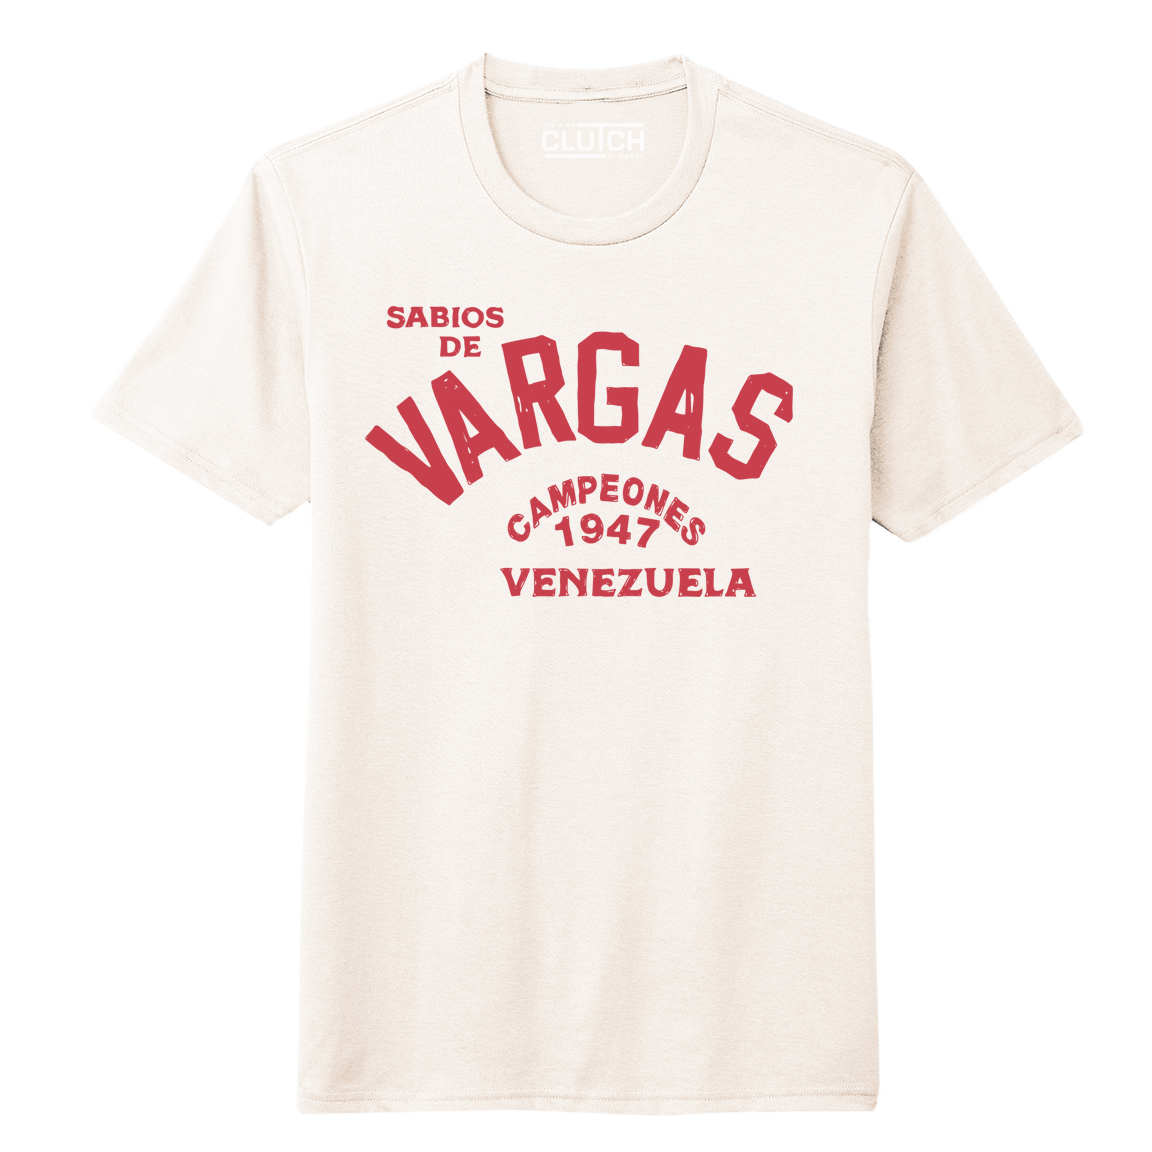 Sabios de Vargas T-shirt Latin Baseball